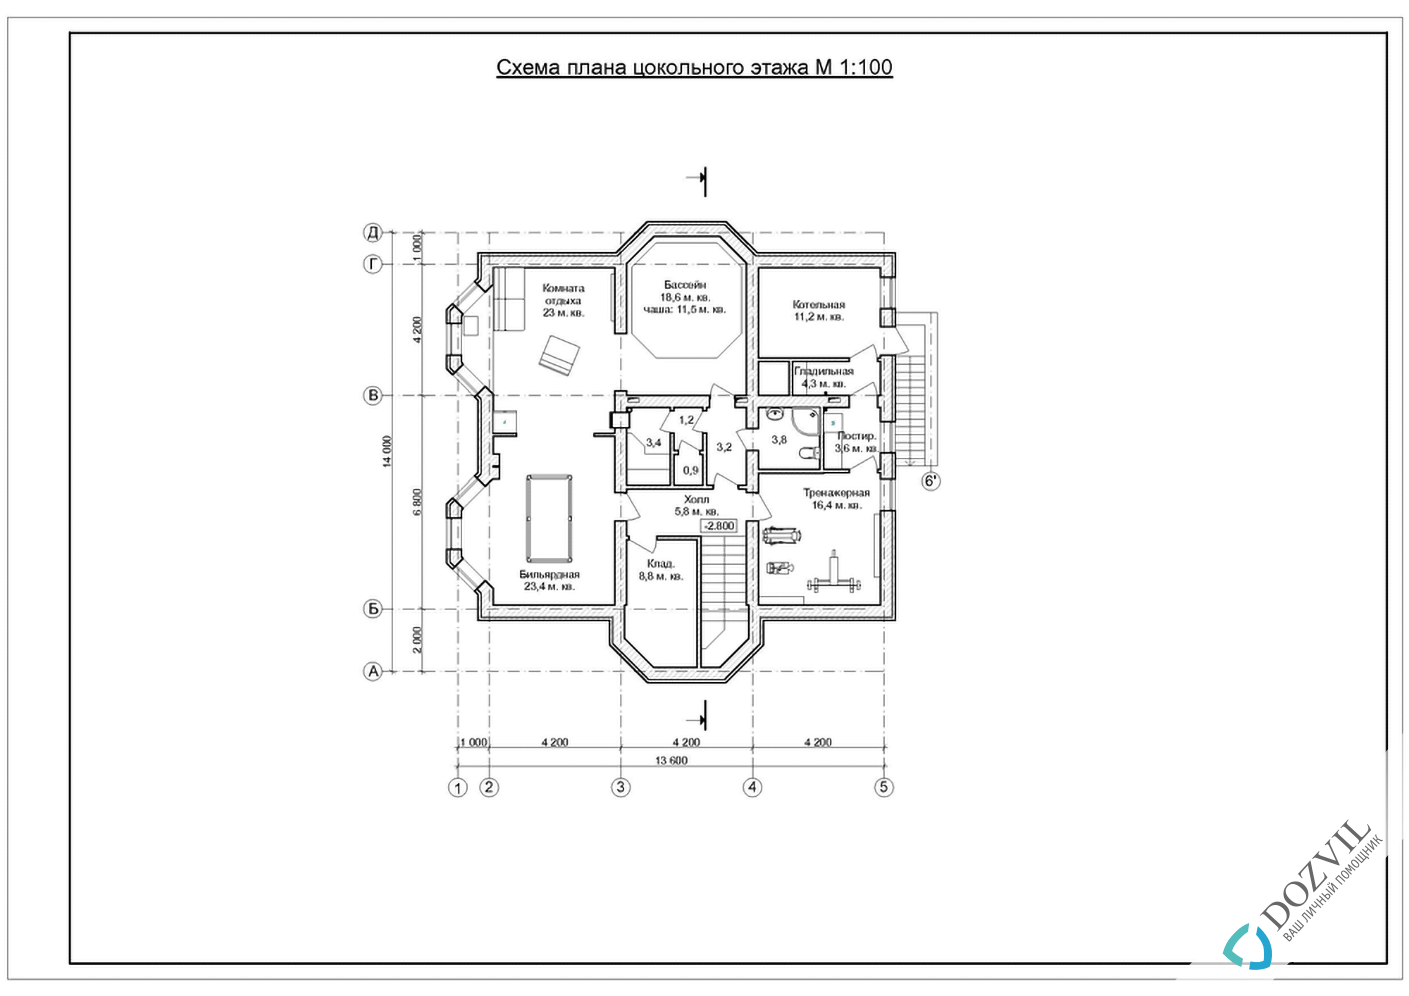 Оформление гаража > Гараж на участке рядом с жилым или садовым домом > 2 этап - Разработка эскиза намерений строительства